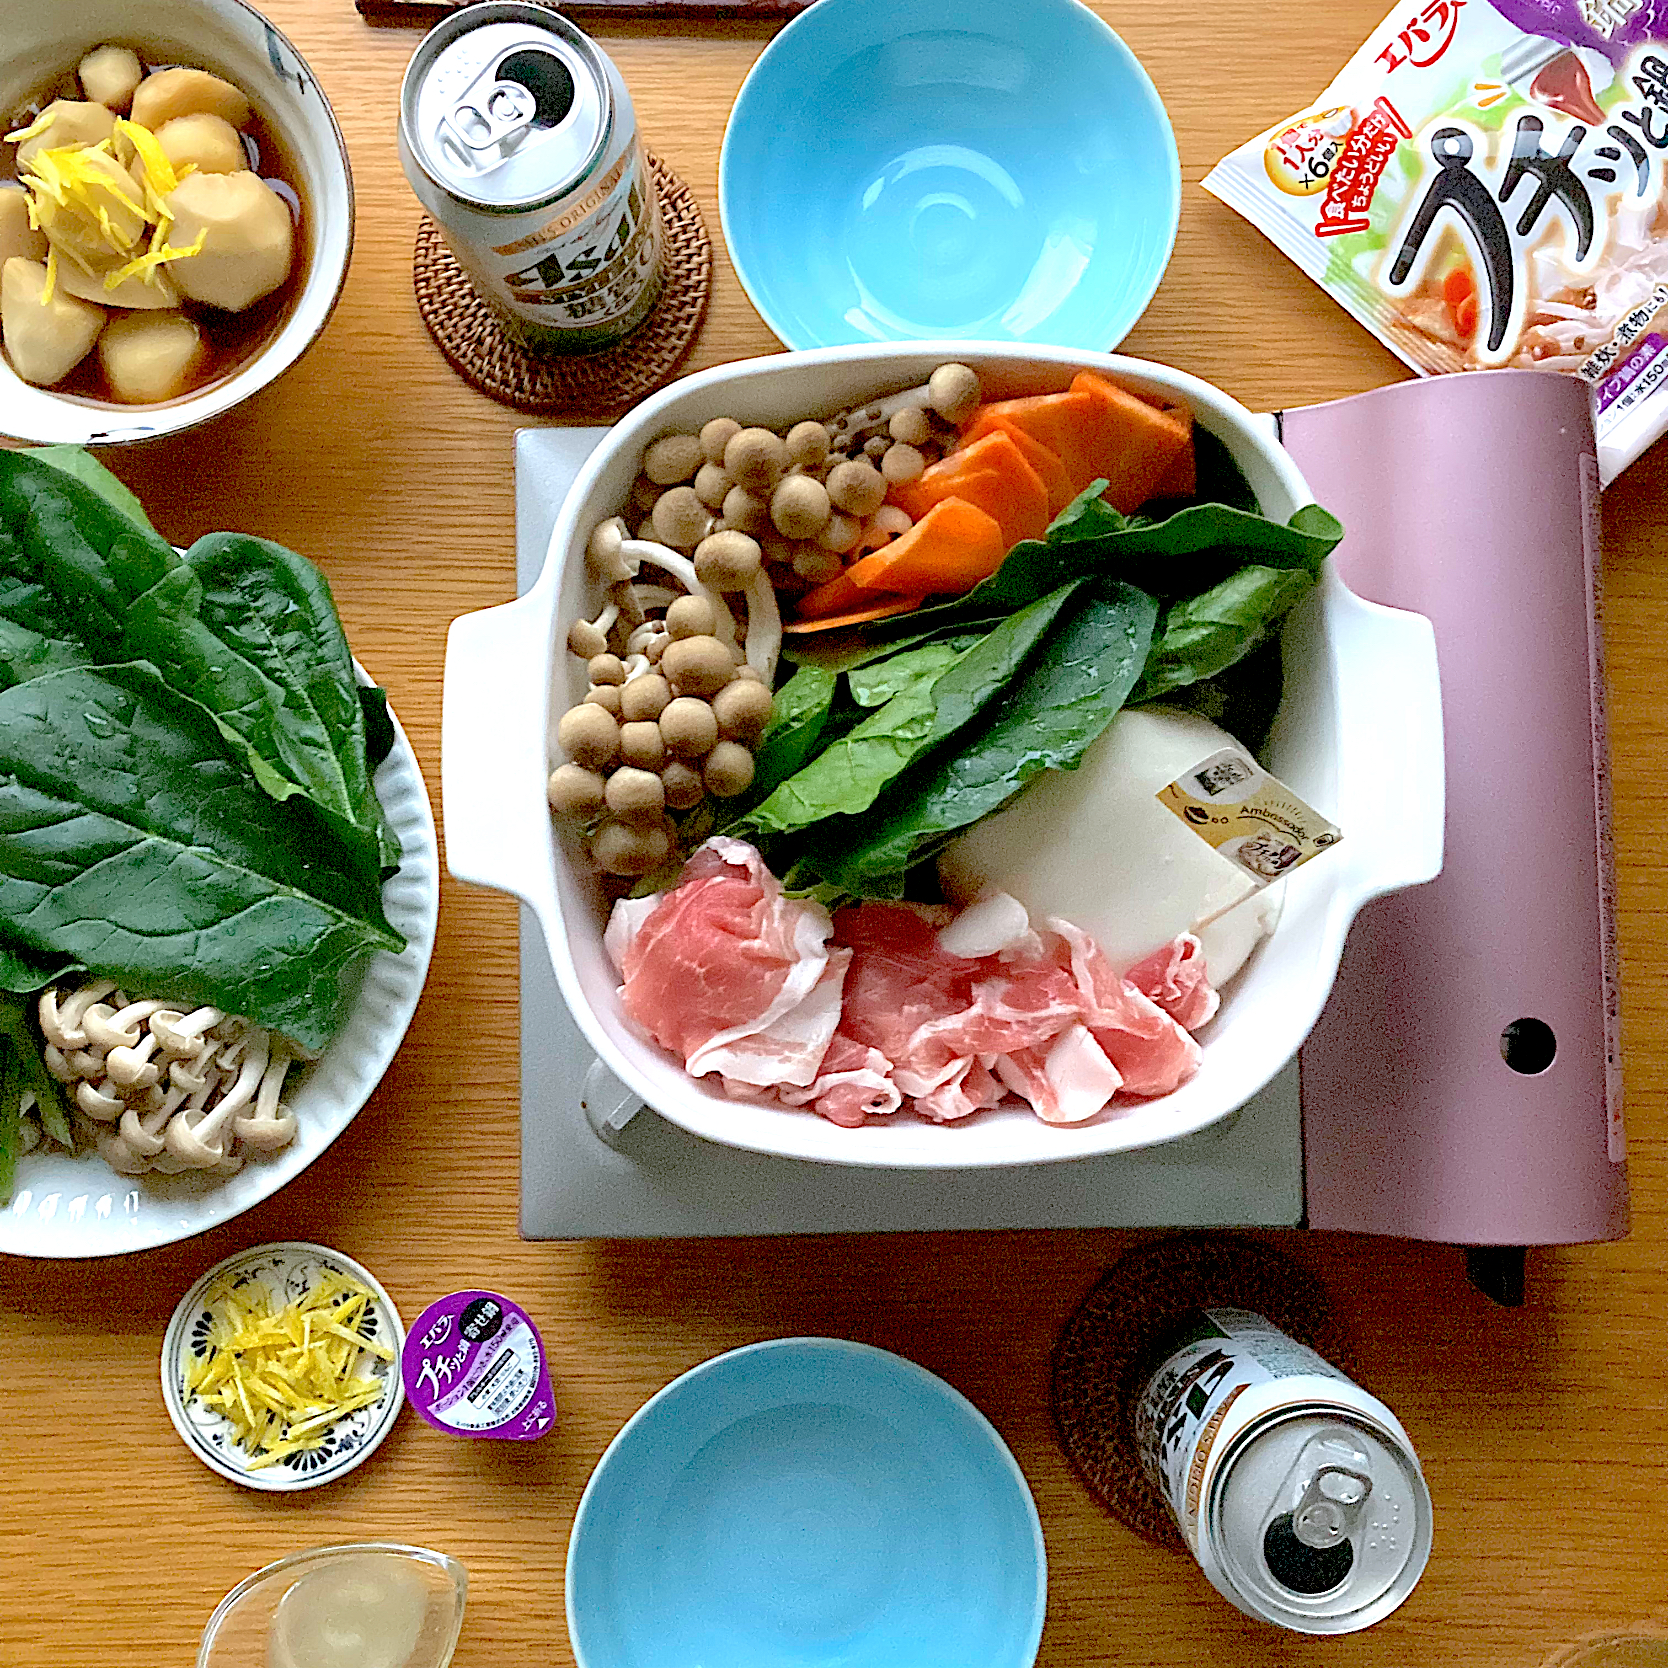 古尾谷りかこさんの料理 常夜鍋のある食卓 『スタイルフリーでおうち鍋を楽しもう♪』キャンペーンアンバサダー 2.